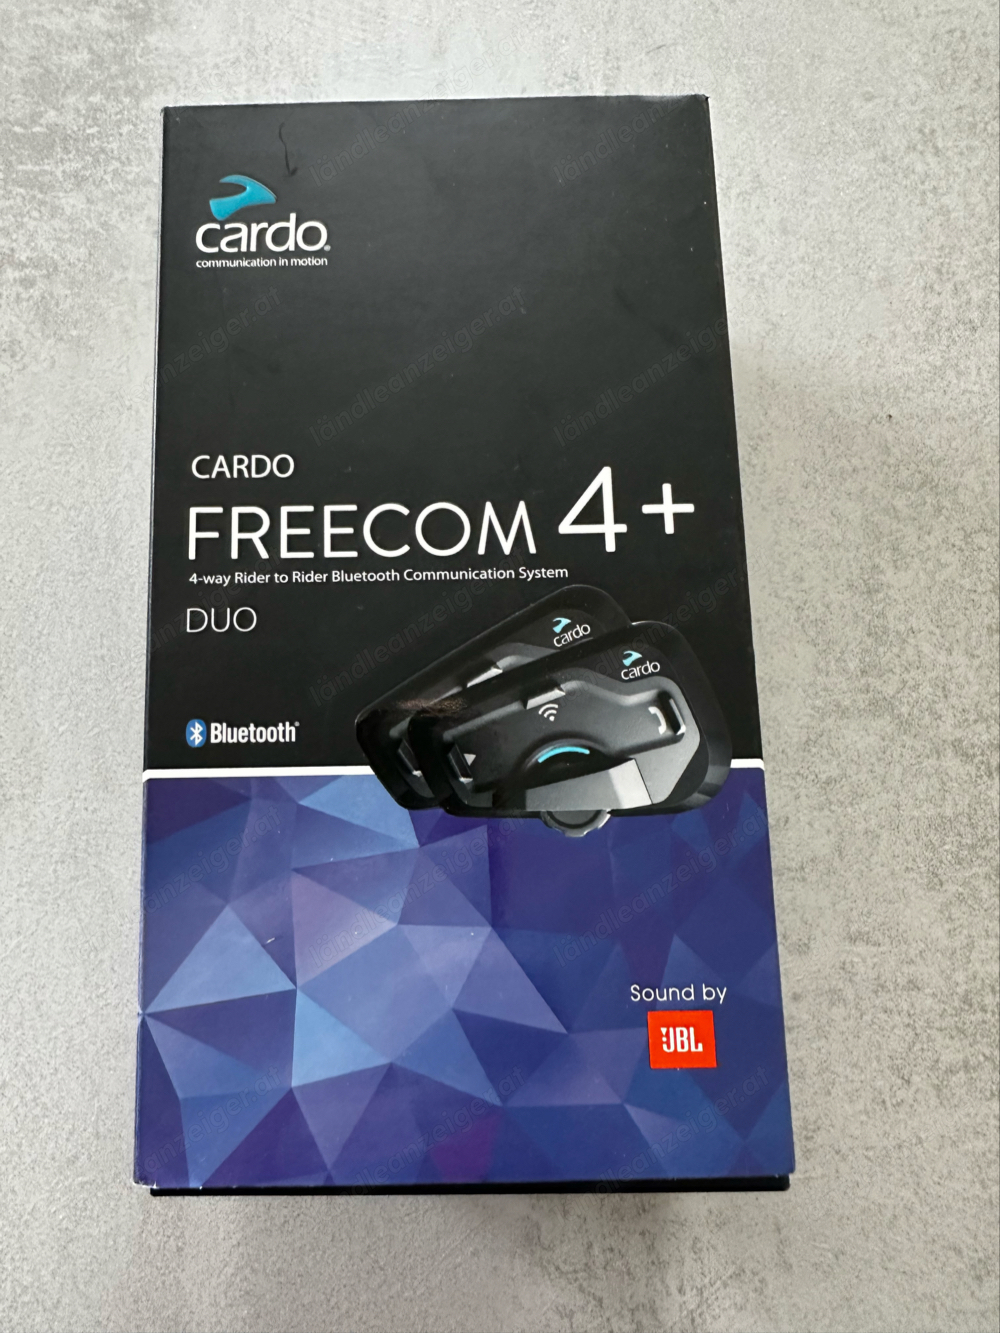 CARDO FREECOM 4+ DUO